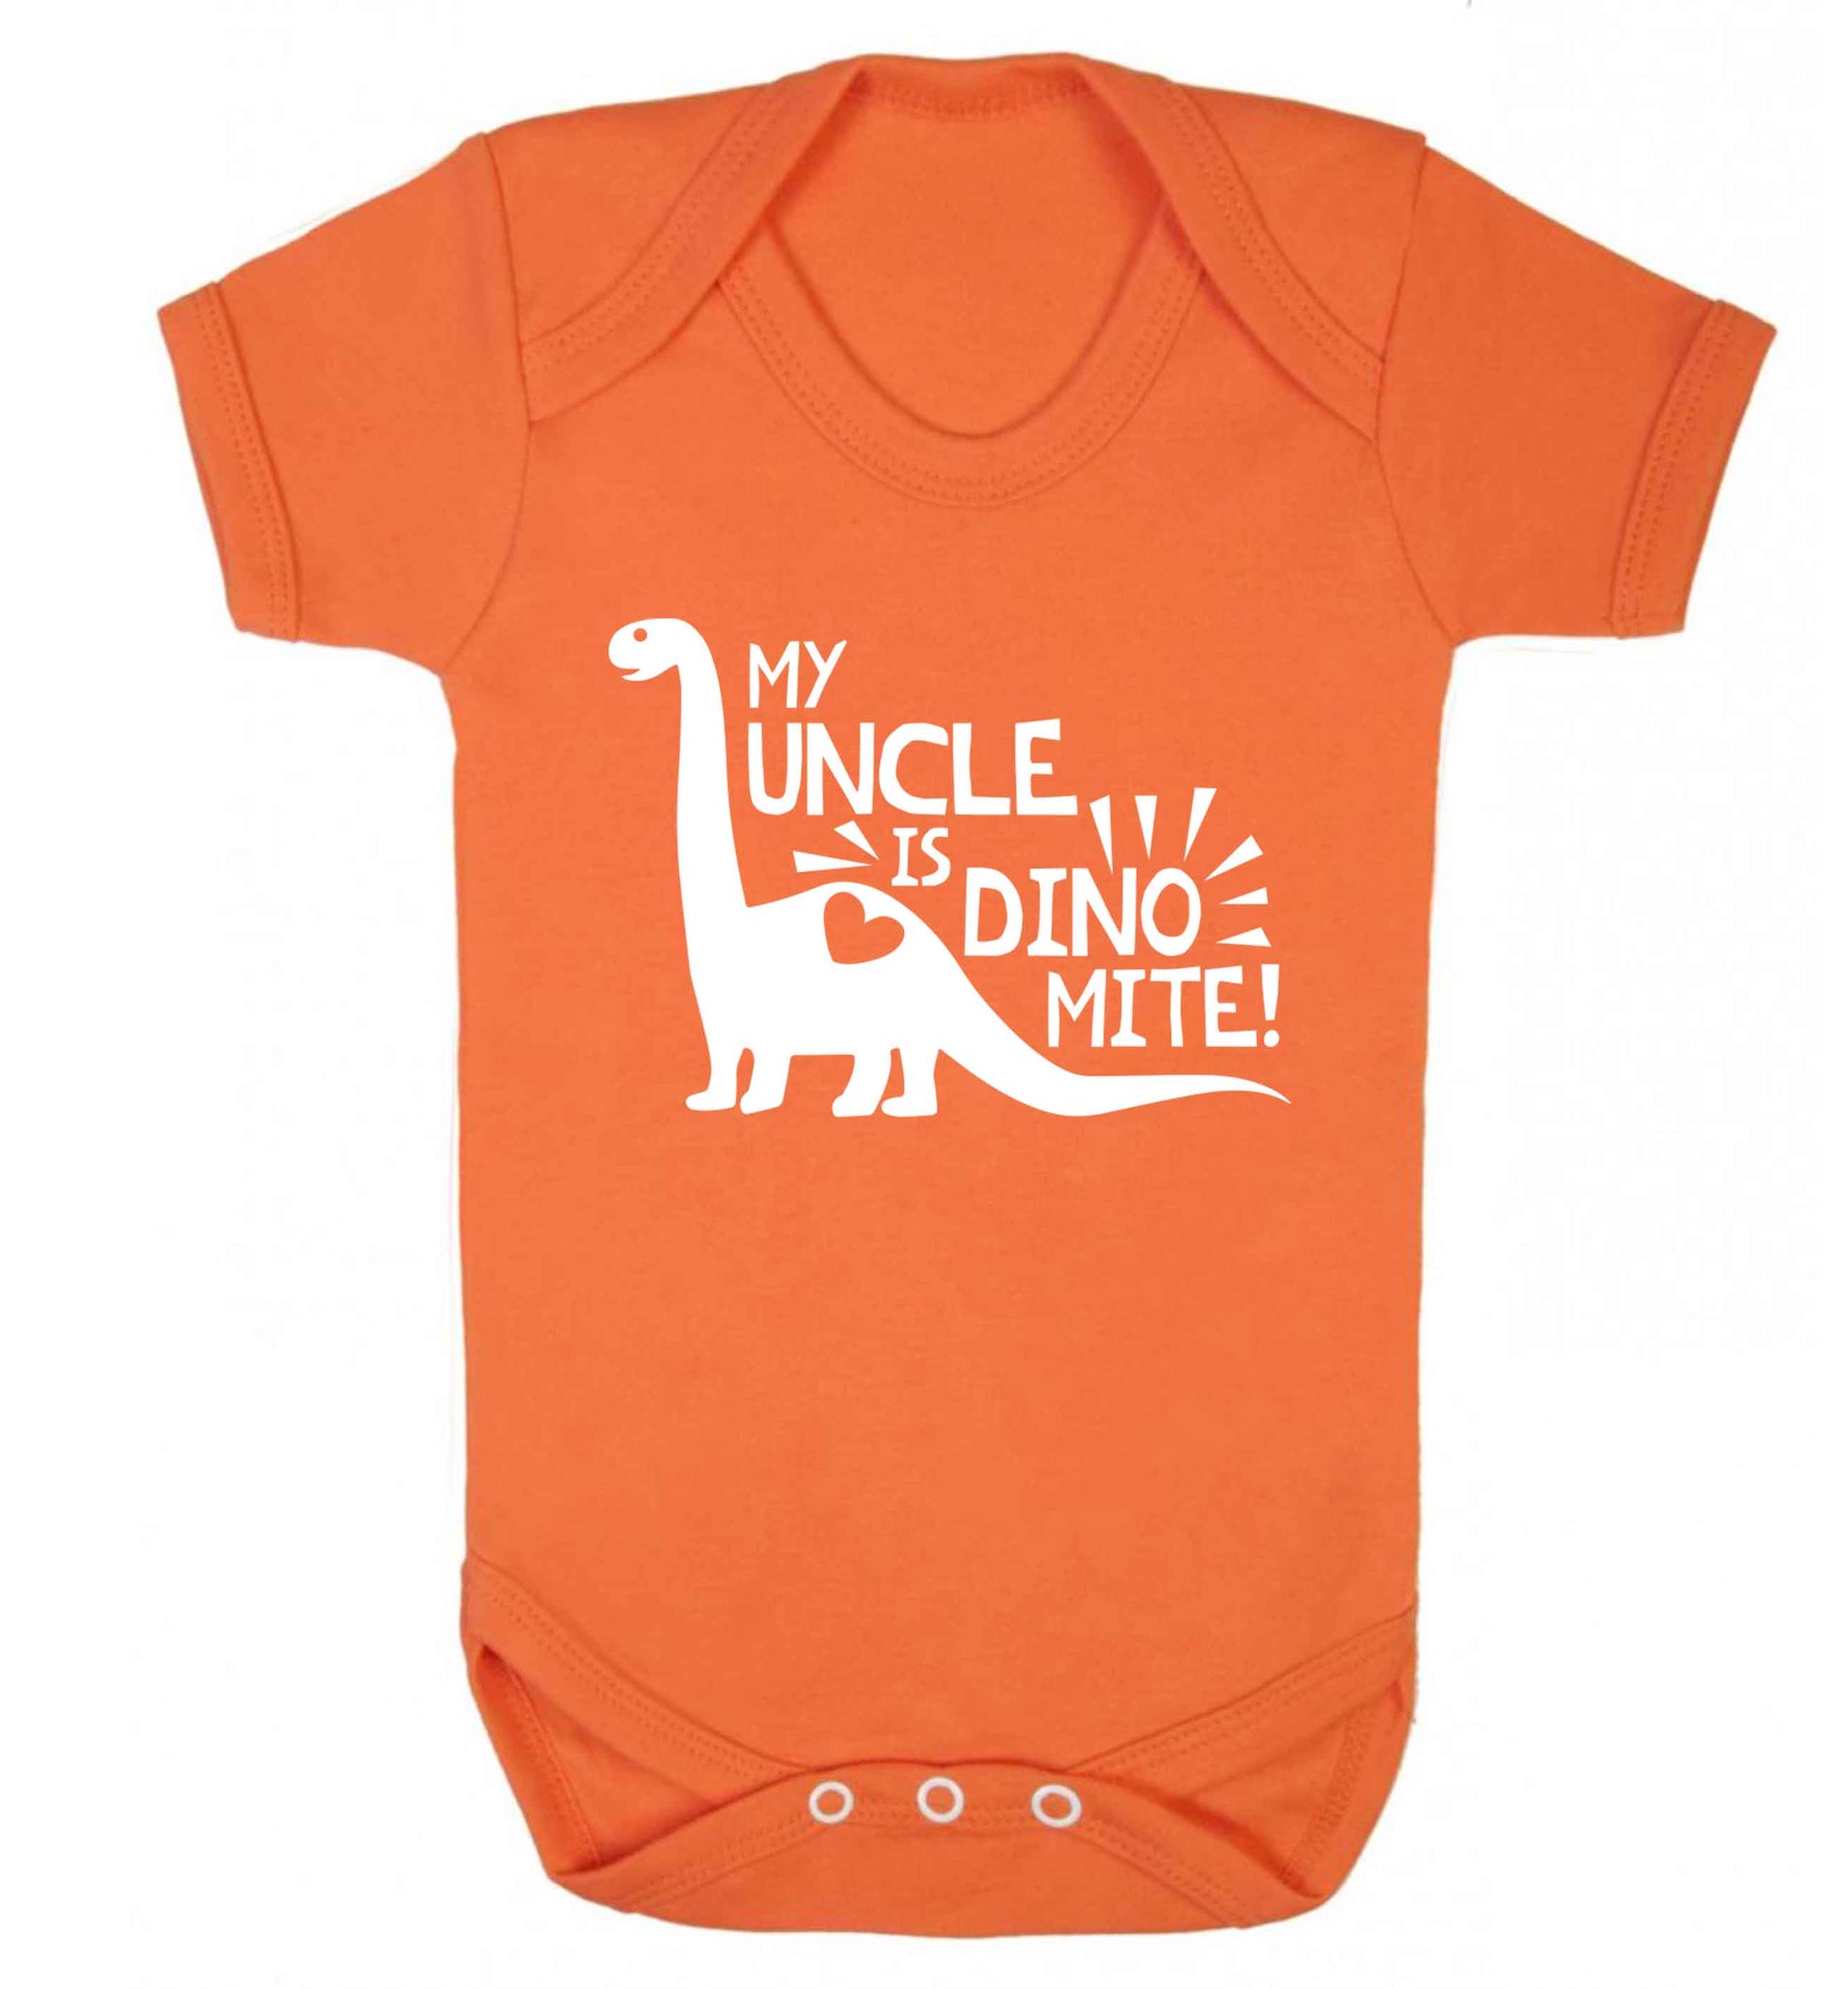 My uncle is dinomite! Baby Vest orange 18-24 months